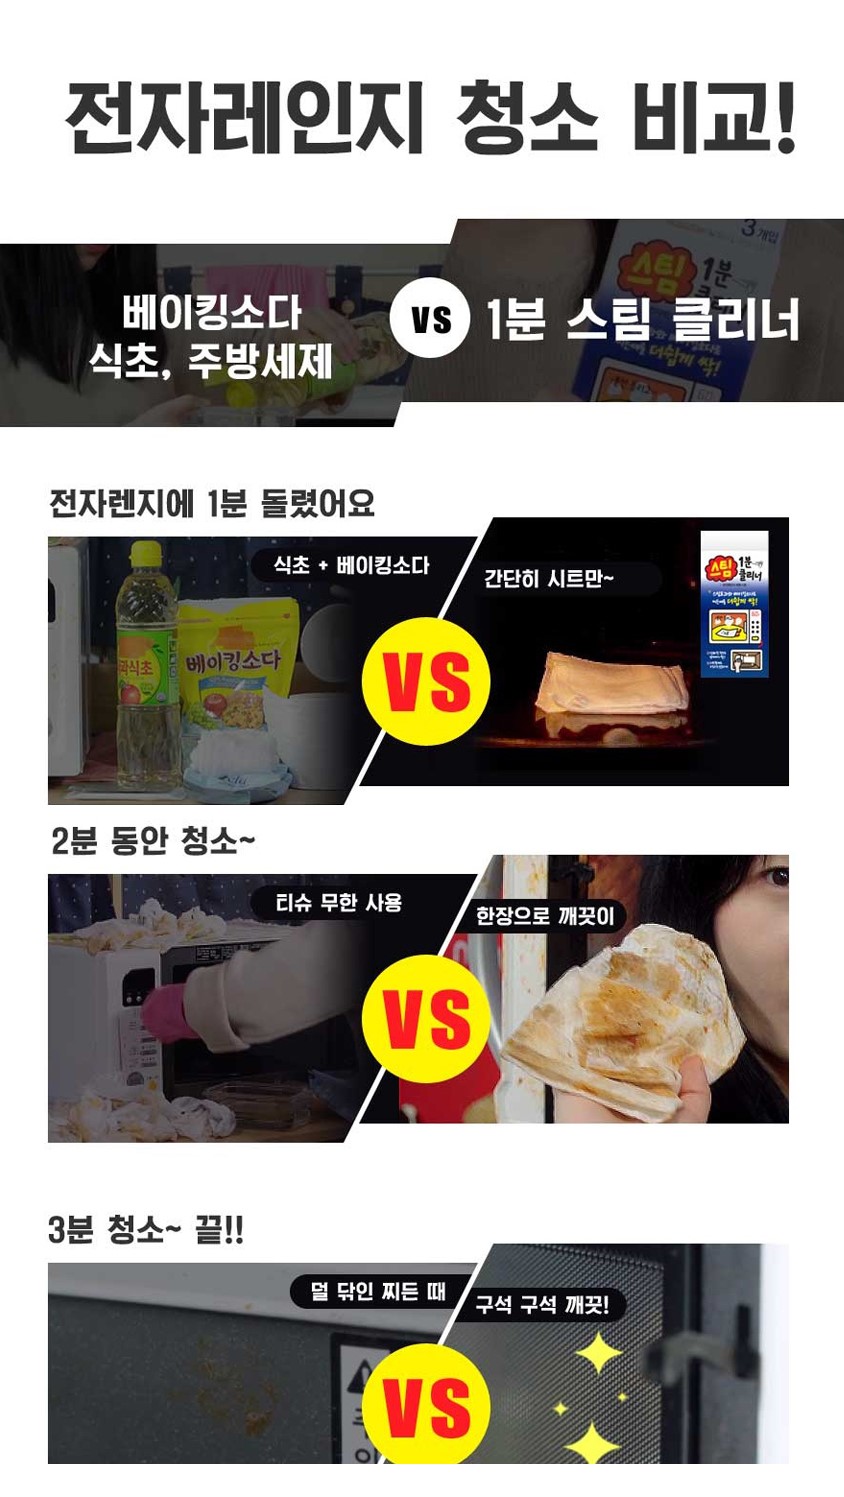 韓國食品-[Aekyung] 1分鐘微波爐清潔劑 (3ea)